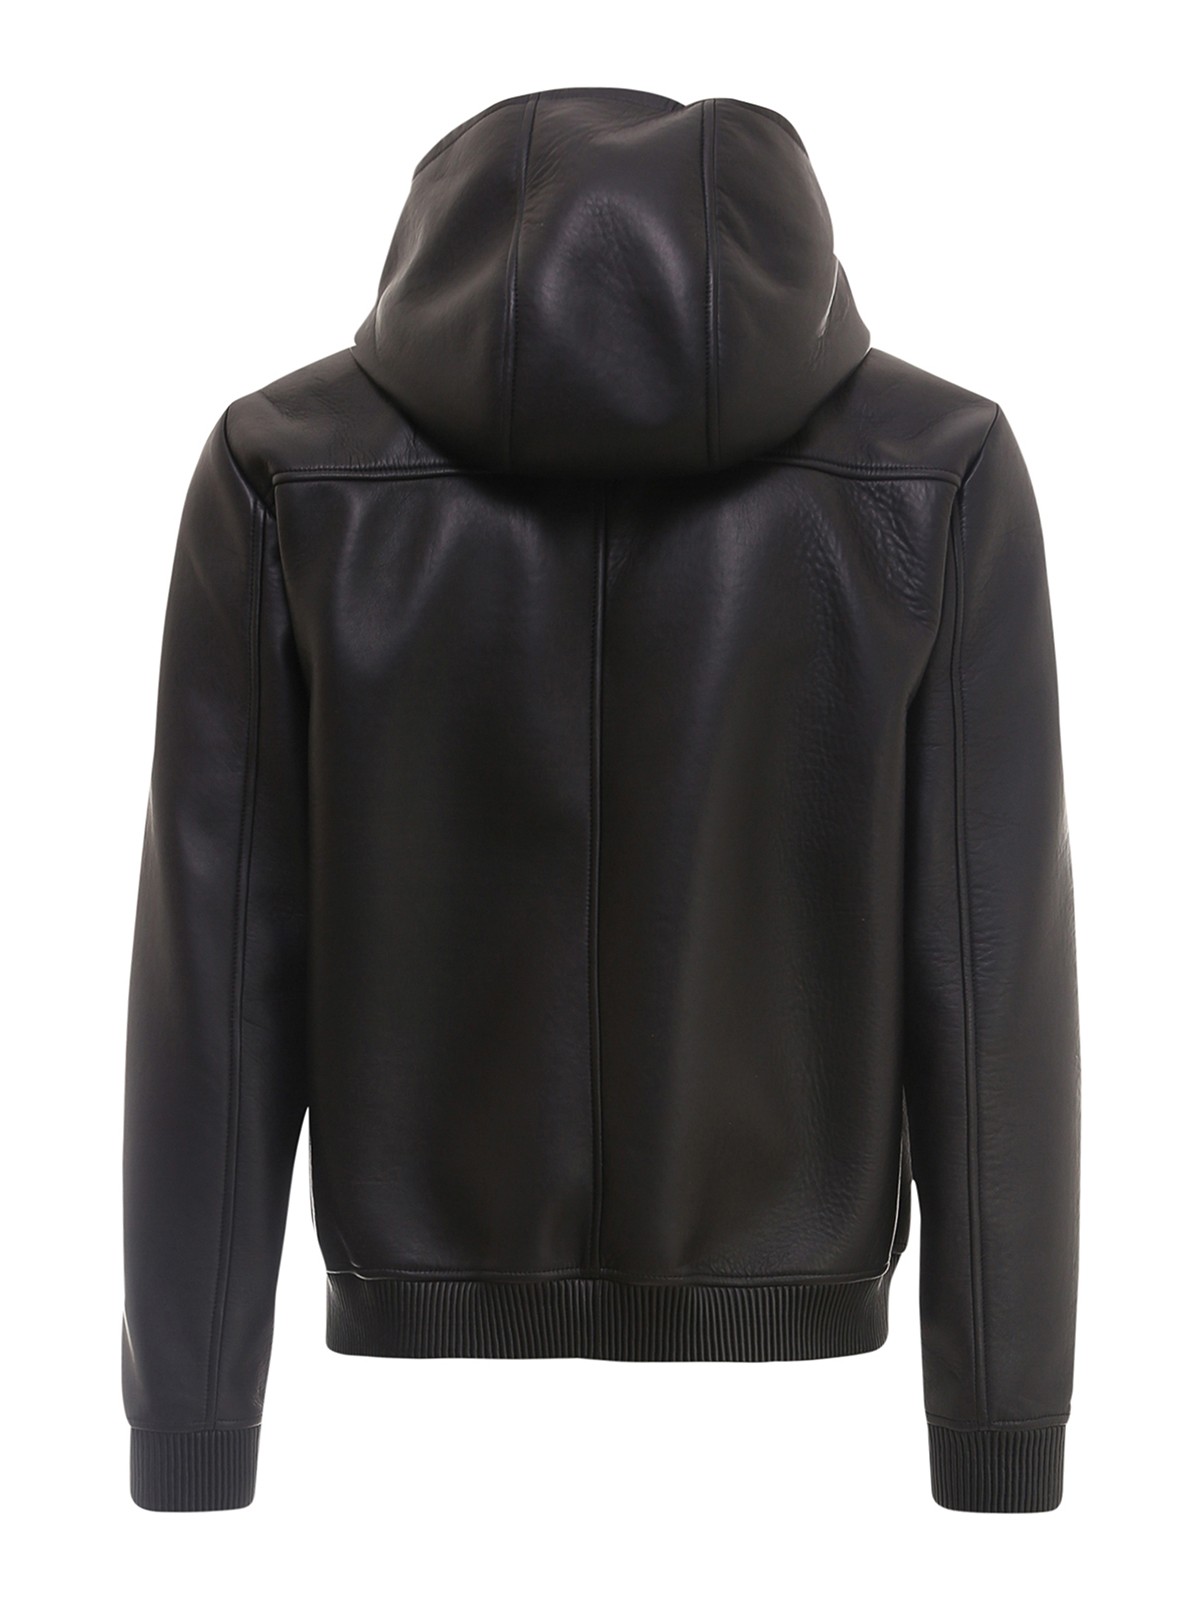 Leather jacket Fendi - Black leather hooded jacket - FPJ046A4C6F0QA1